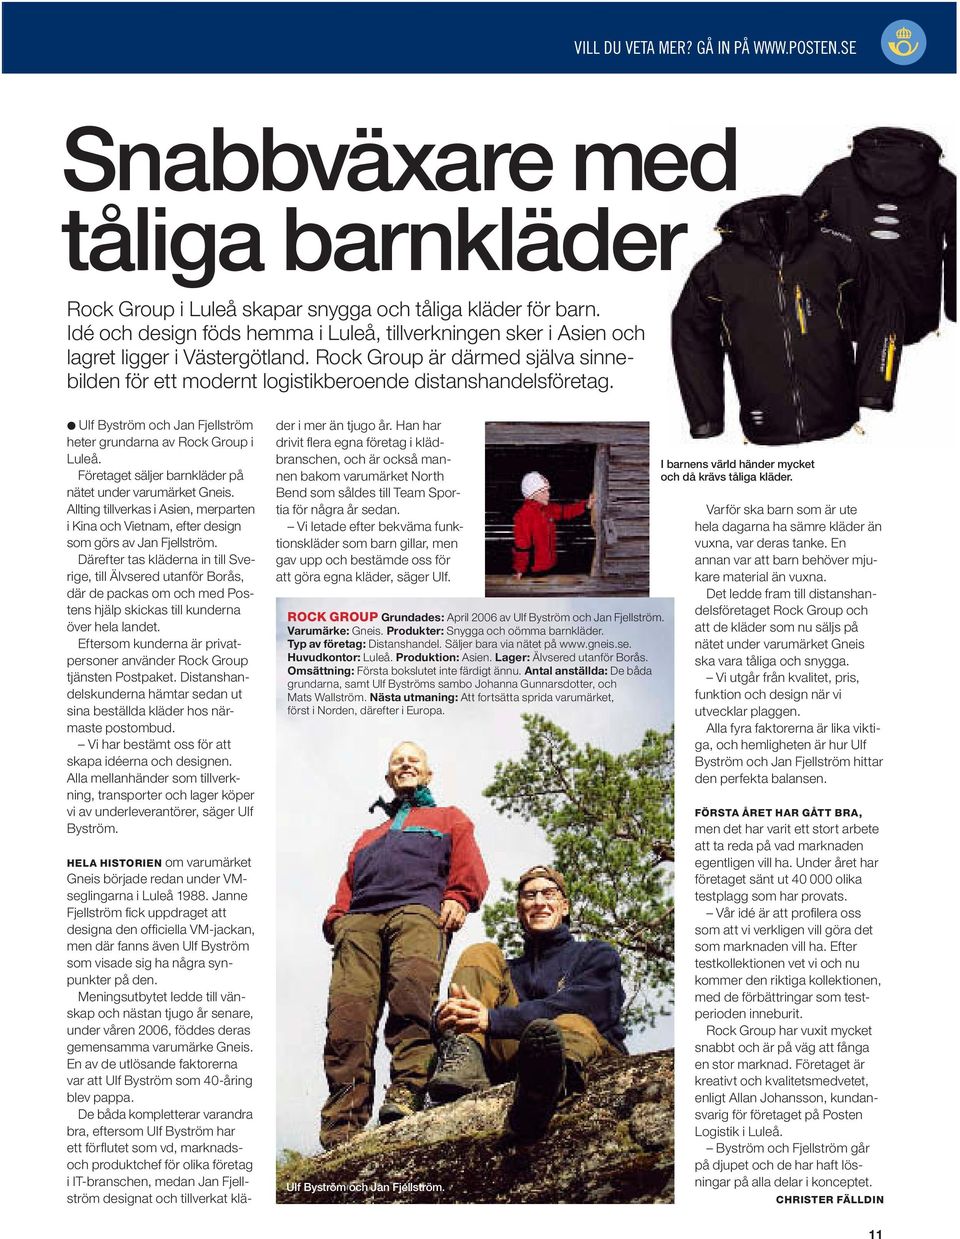 Ulf Byström och Jan Fjellström heter grundarna av Rock Group i Luleå. Företaget säljer barnkläder på nätet under varumärket Gneis.